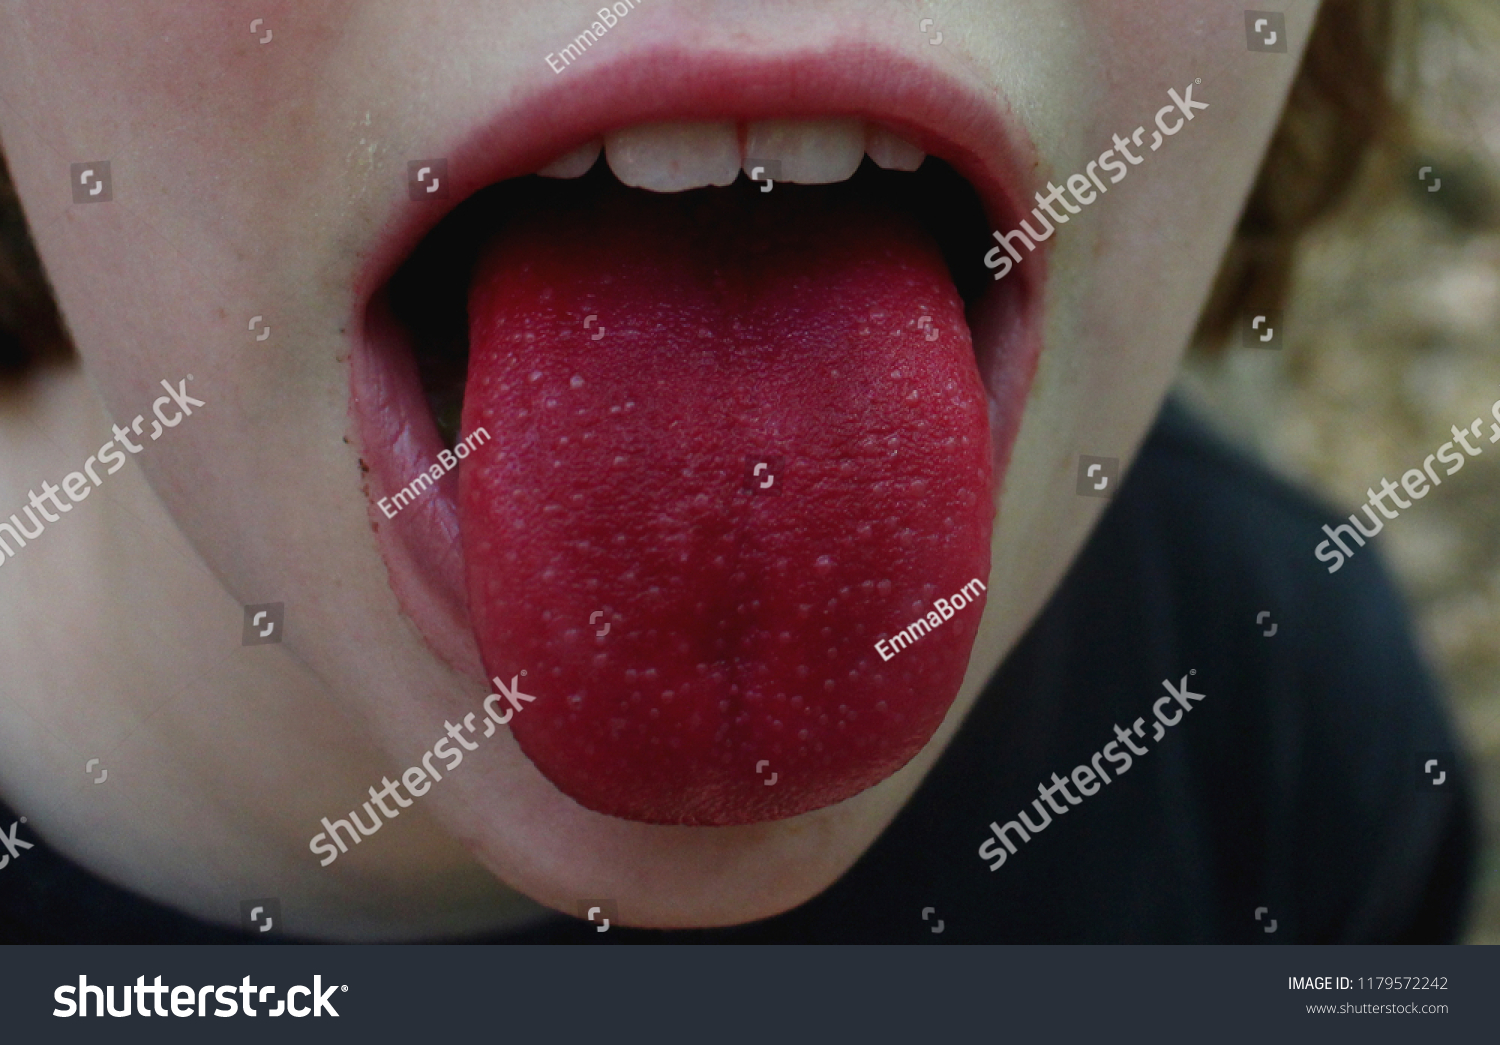 舌红是什么症状图片 舌红是什么症状图片大全